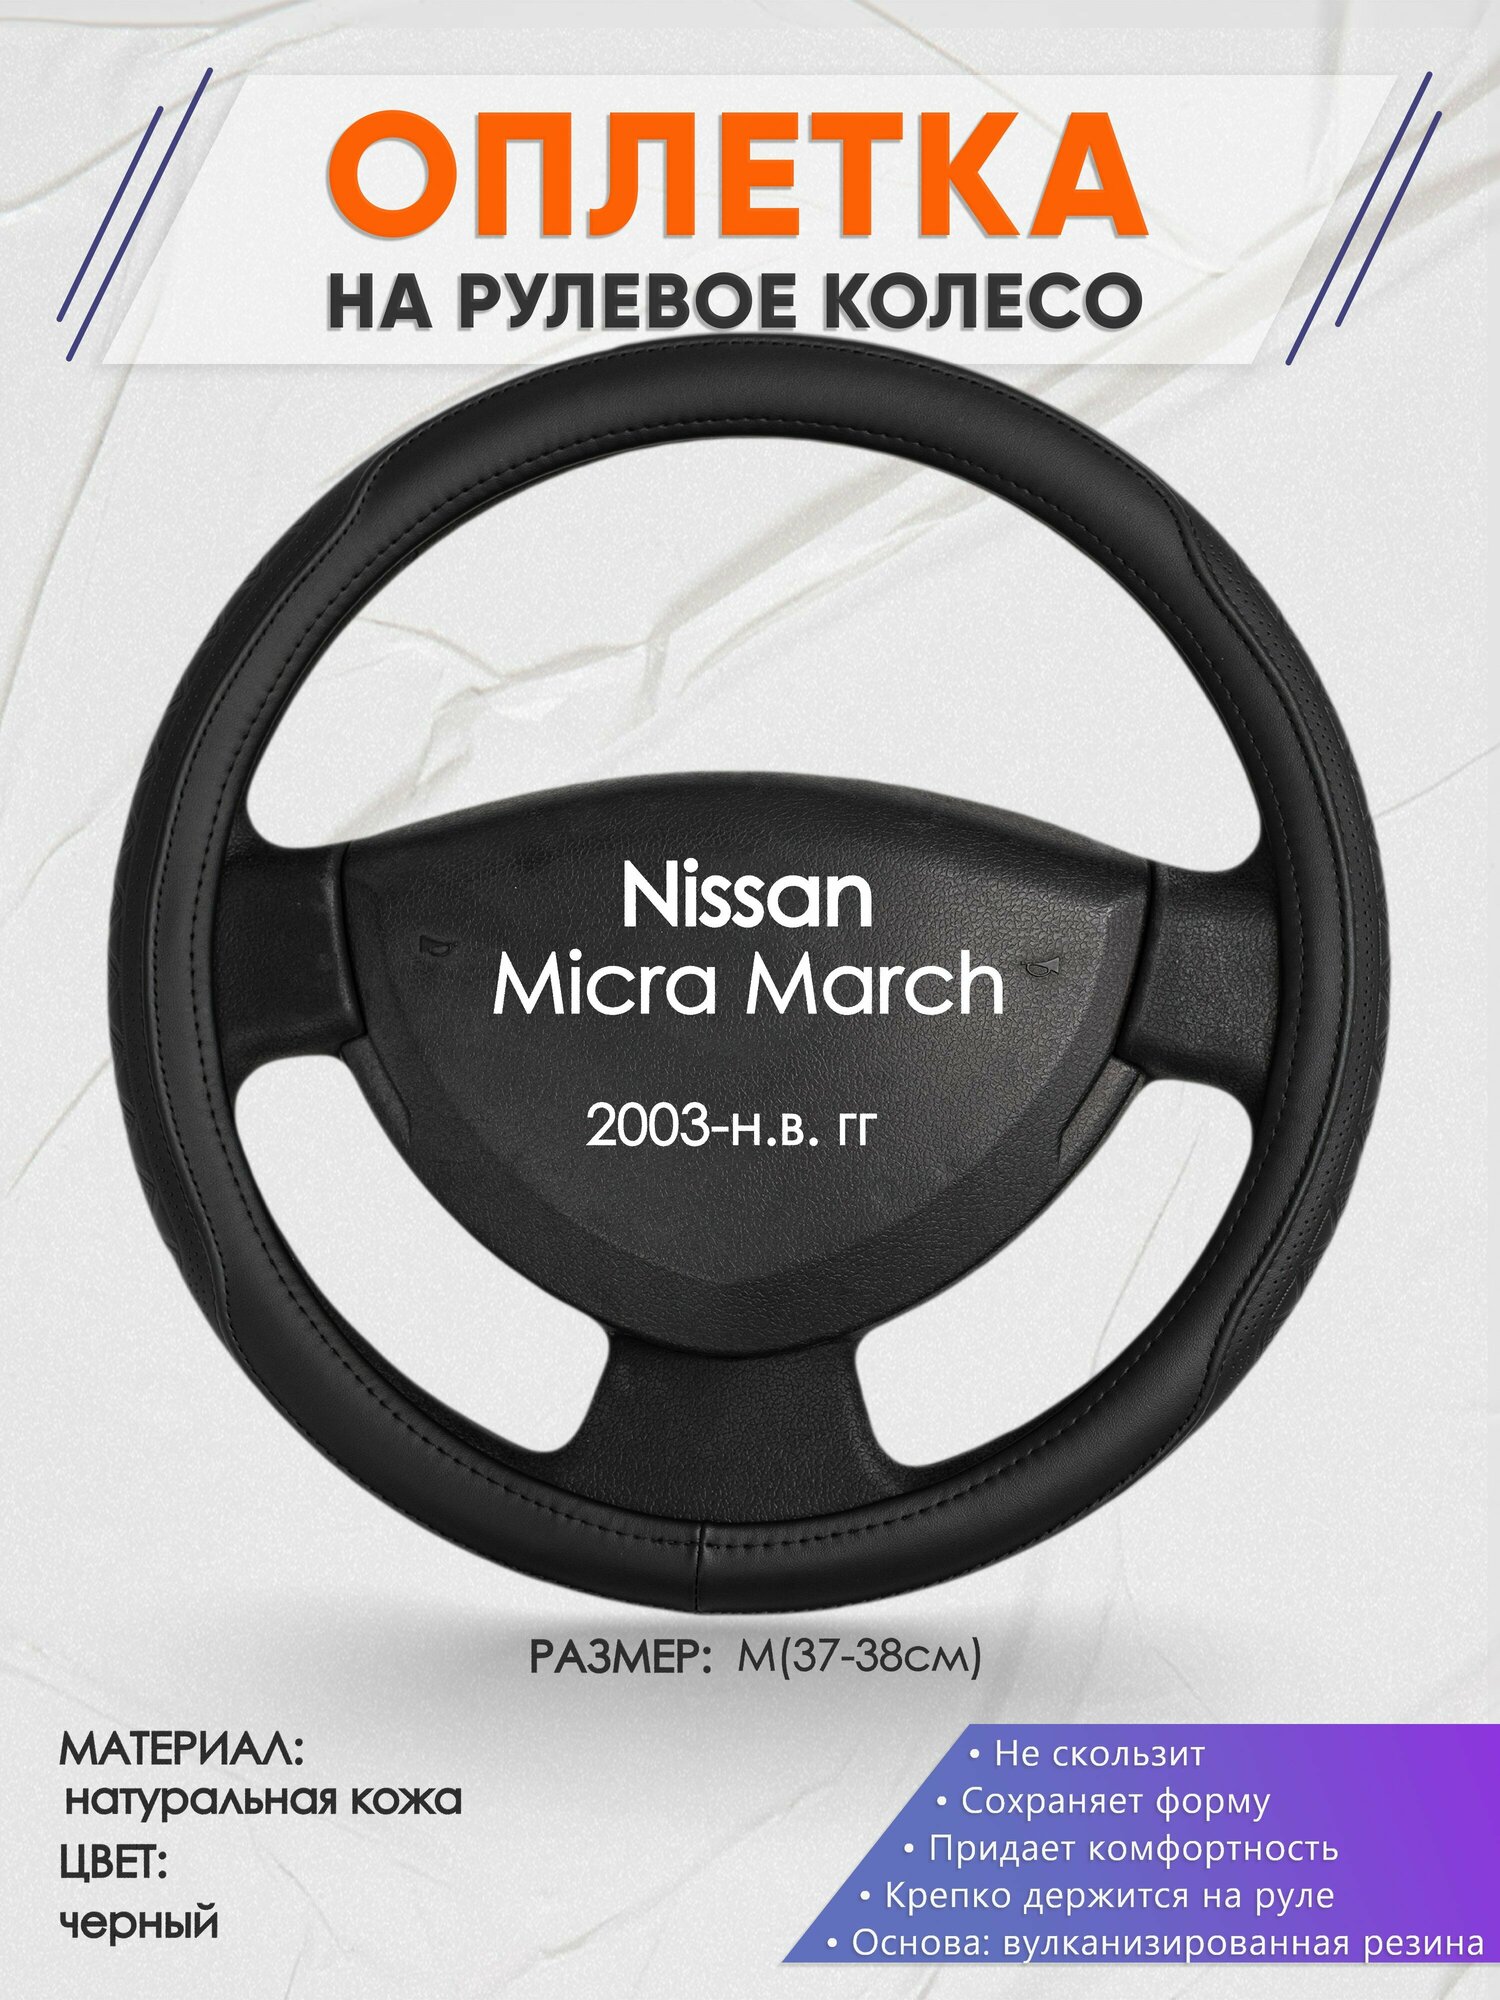 Оплетка на руль для Nissan Micra March(Ниссан Микра) 2003-н. в, M(37-38см), Натуральная кожа 28